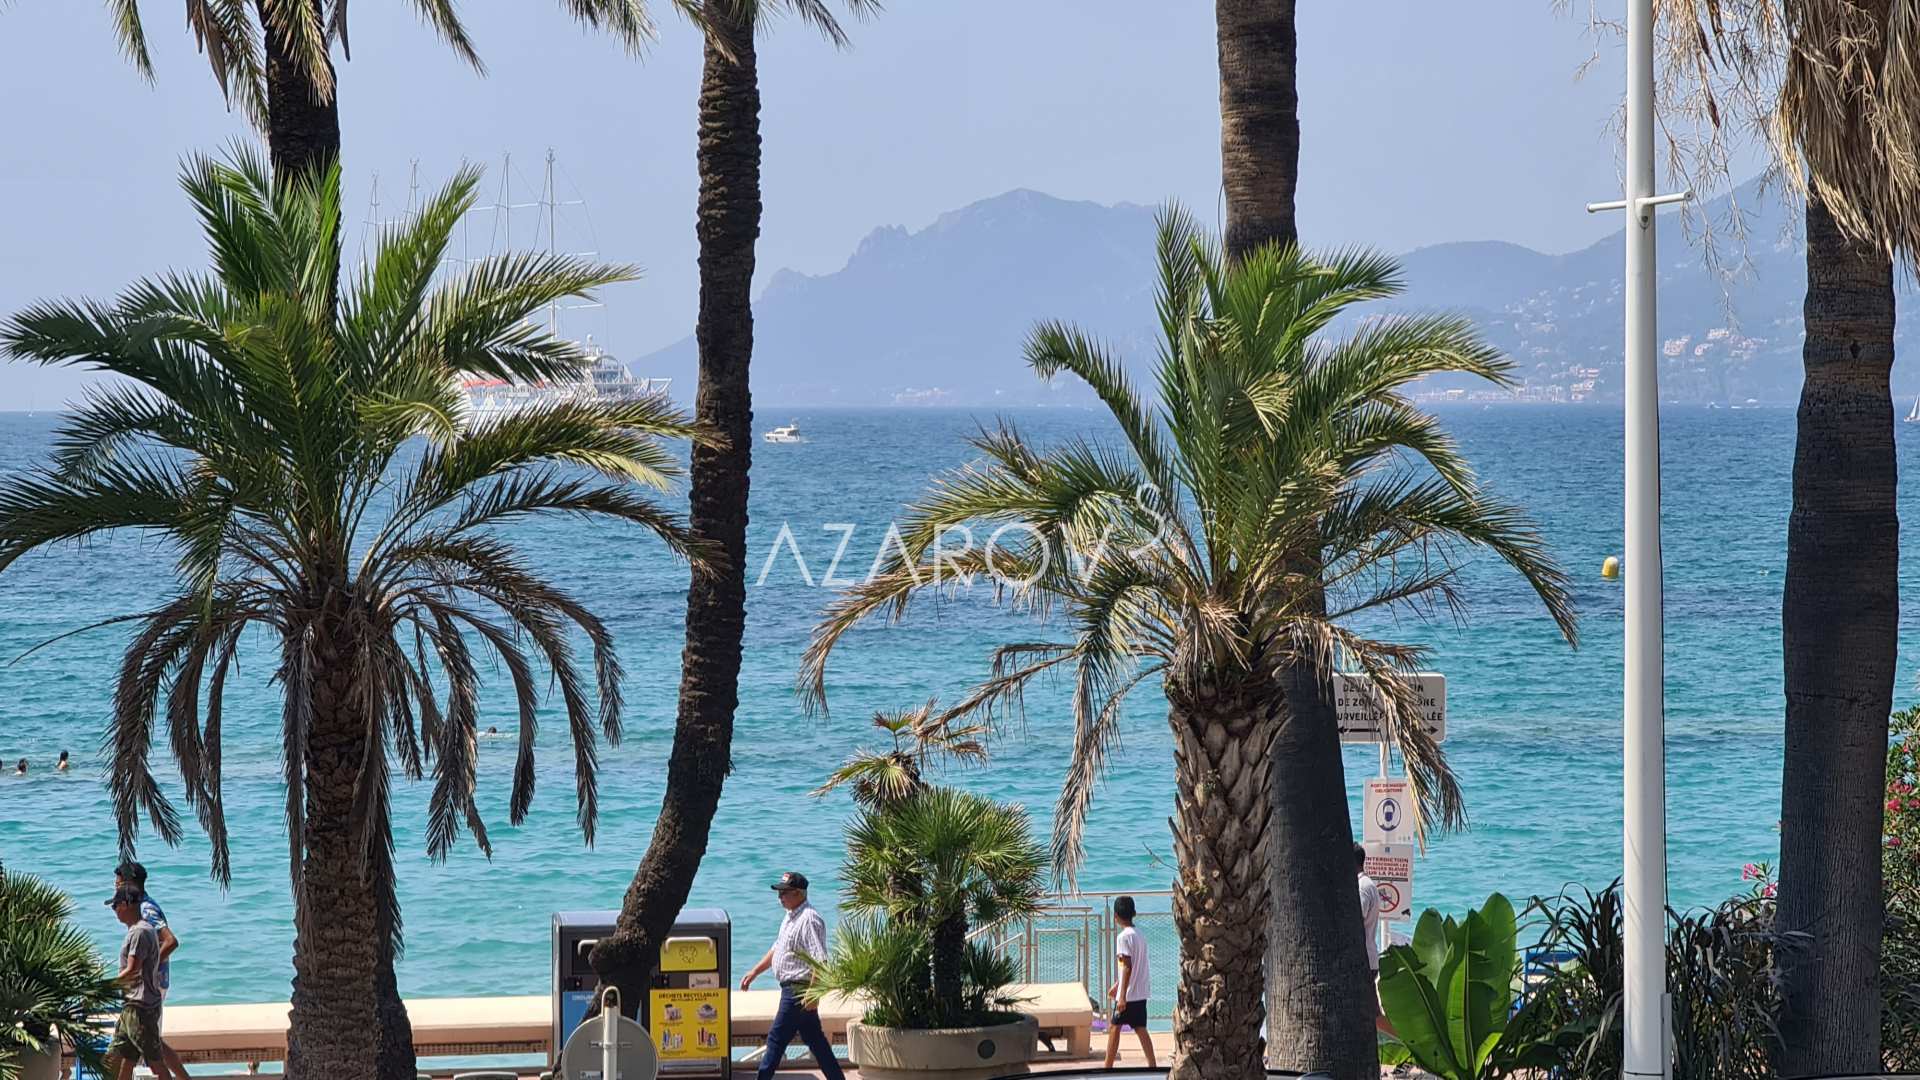 Croisette Beach Cannes appartamento 320 m2 in riva al mare